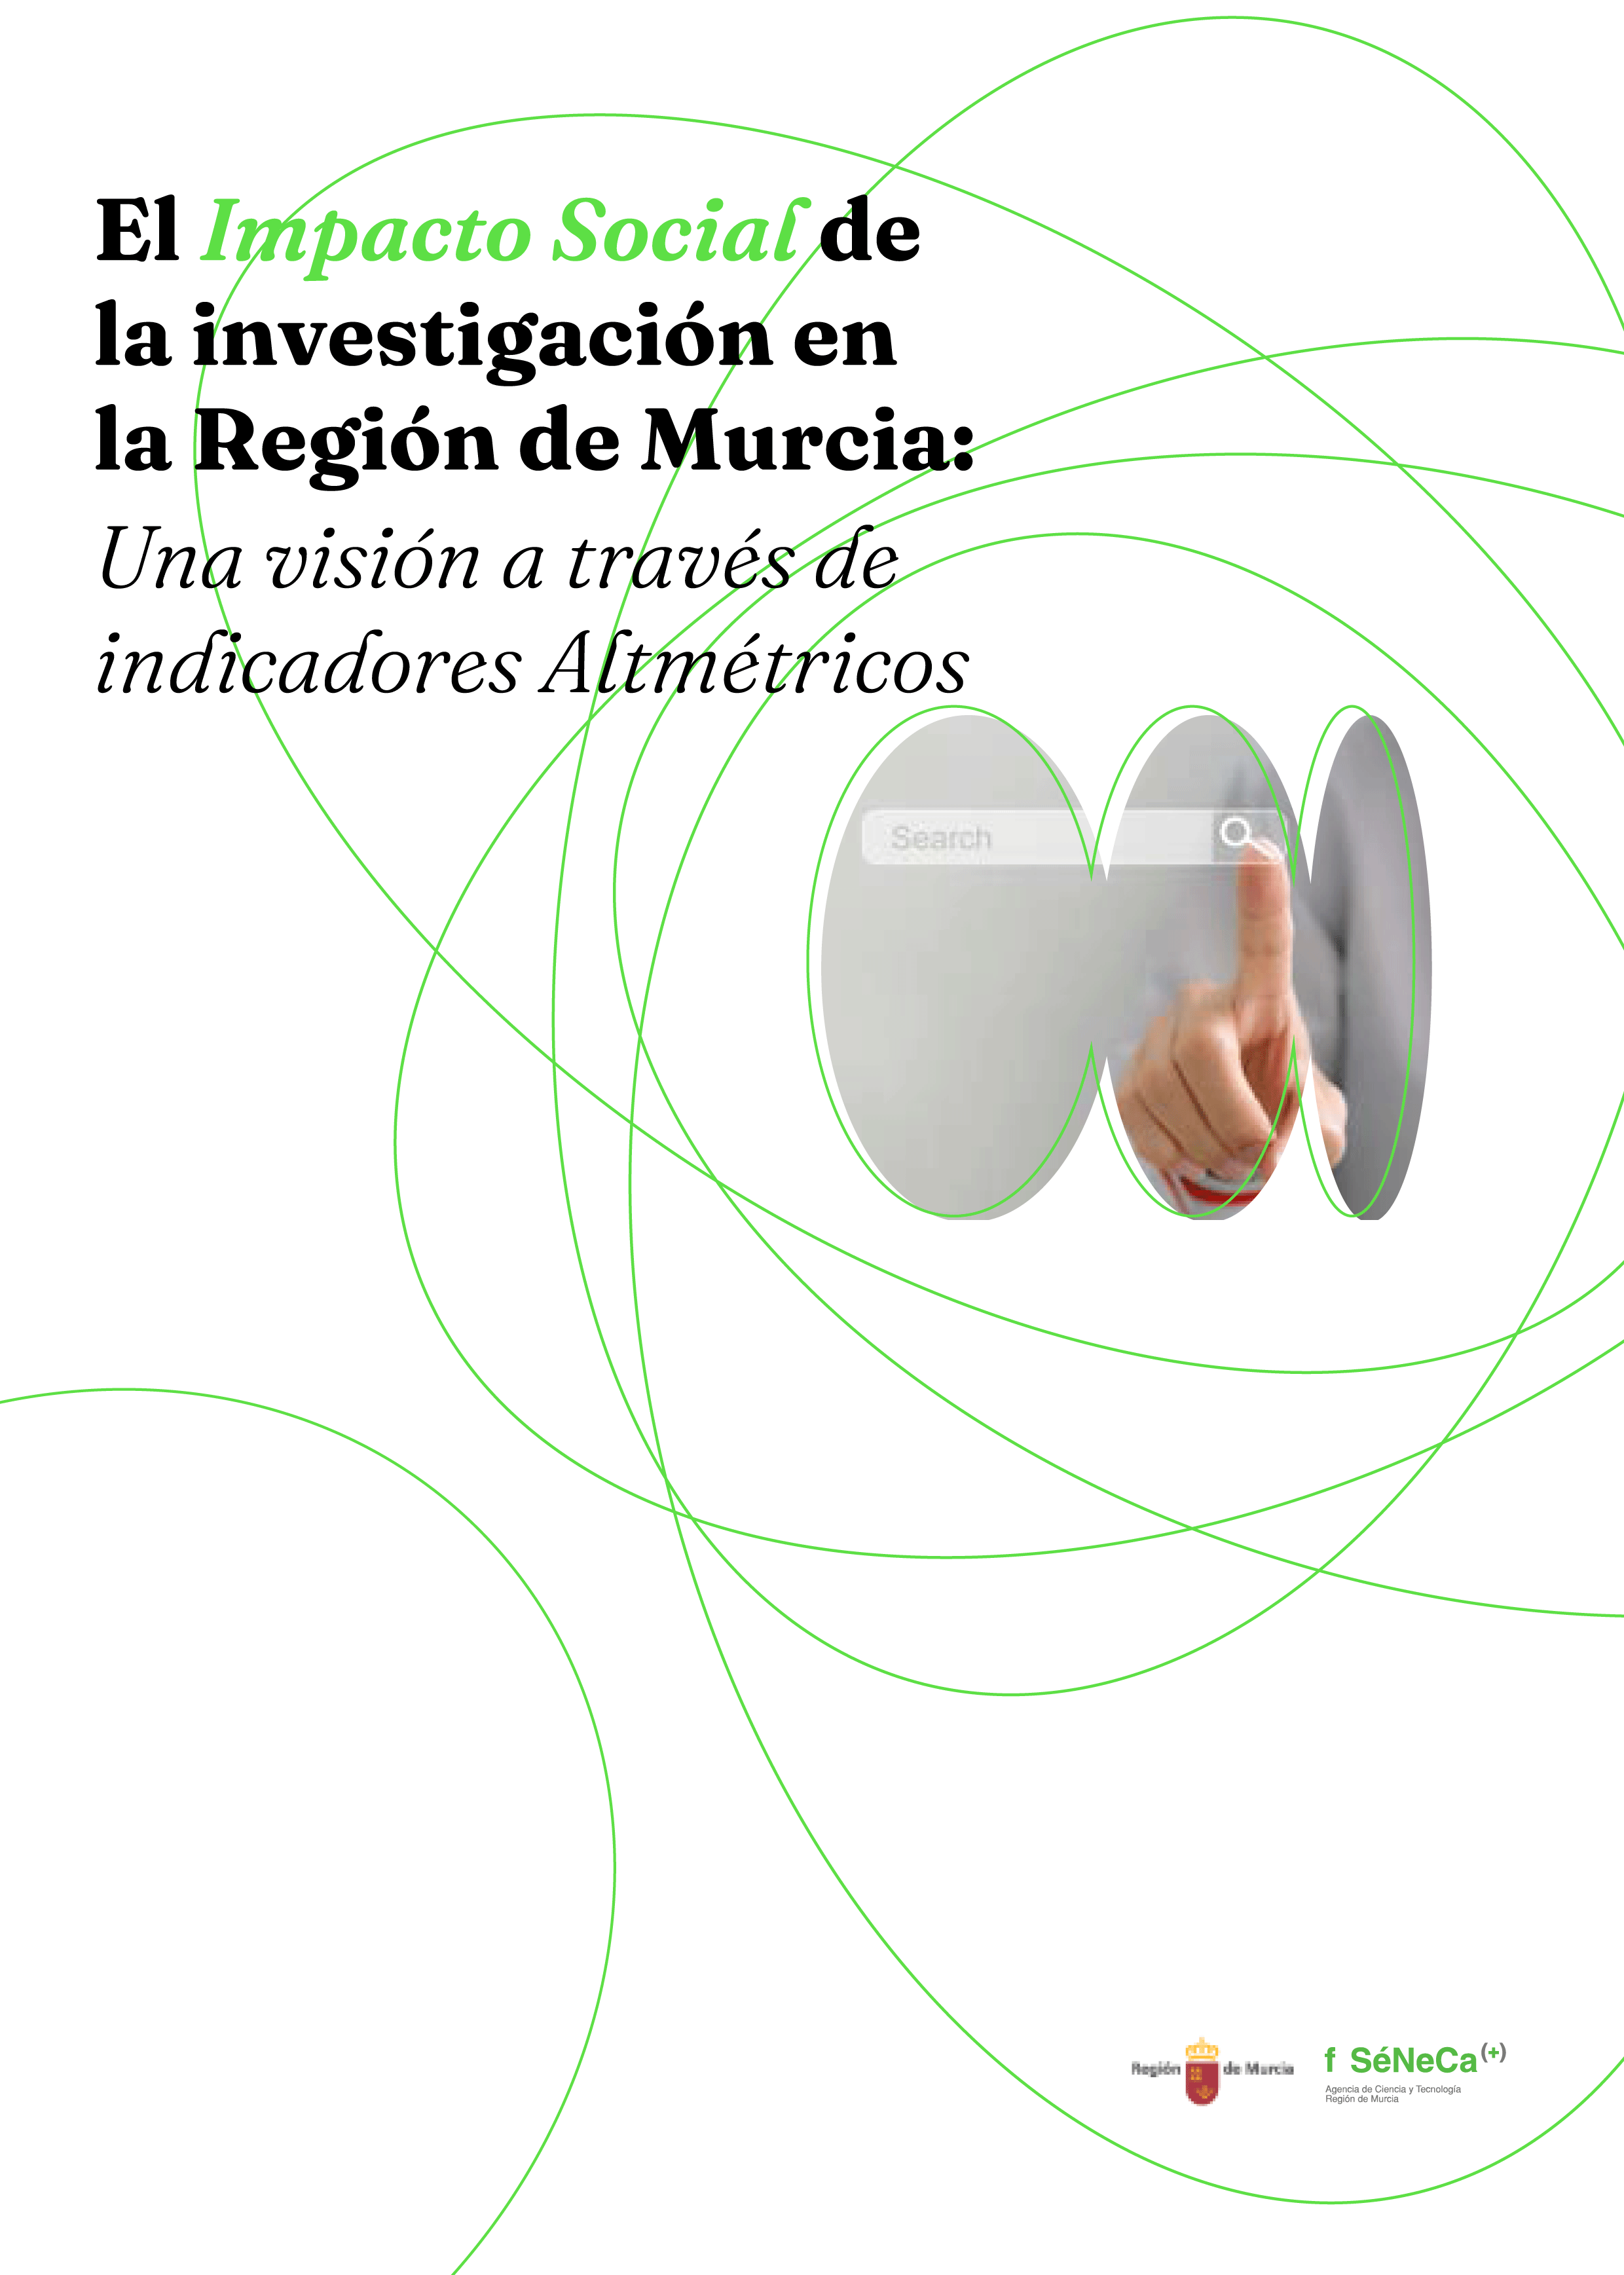 El Impacto Social de la investigación en la Región de Murcia